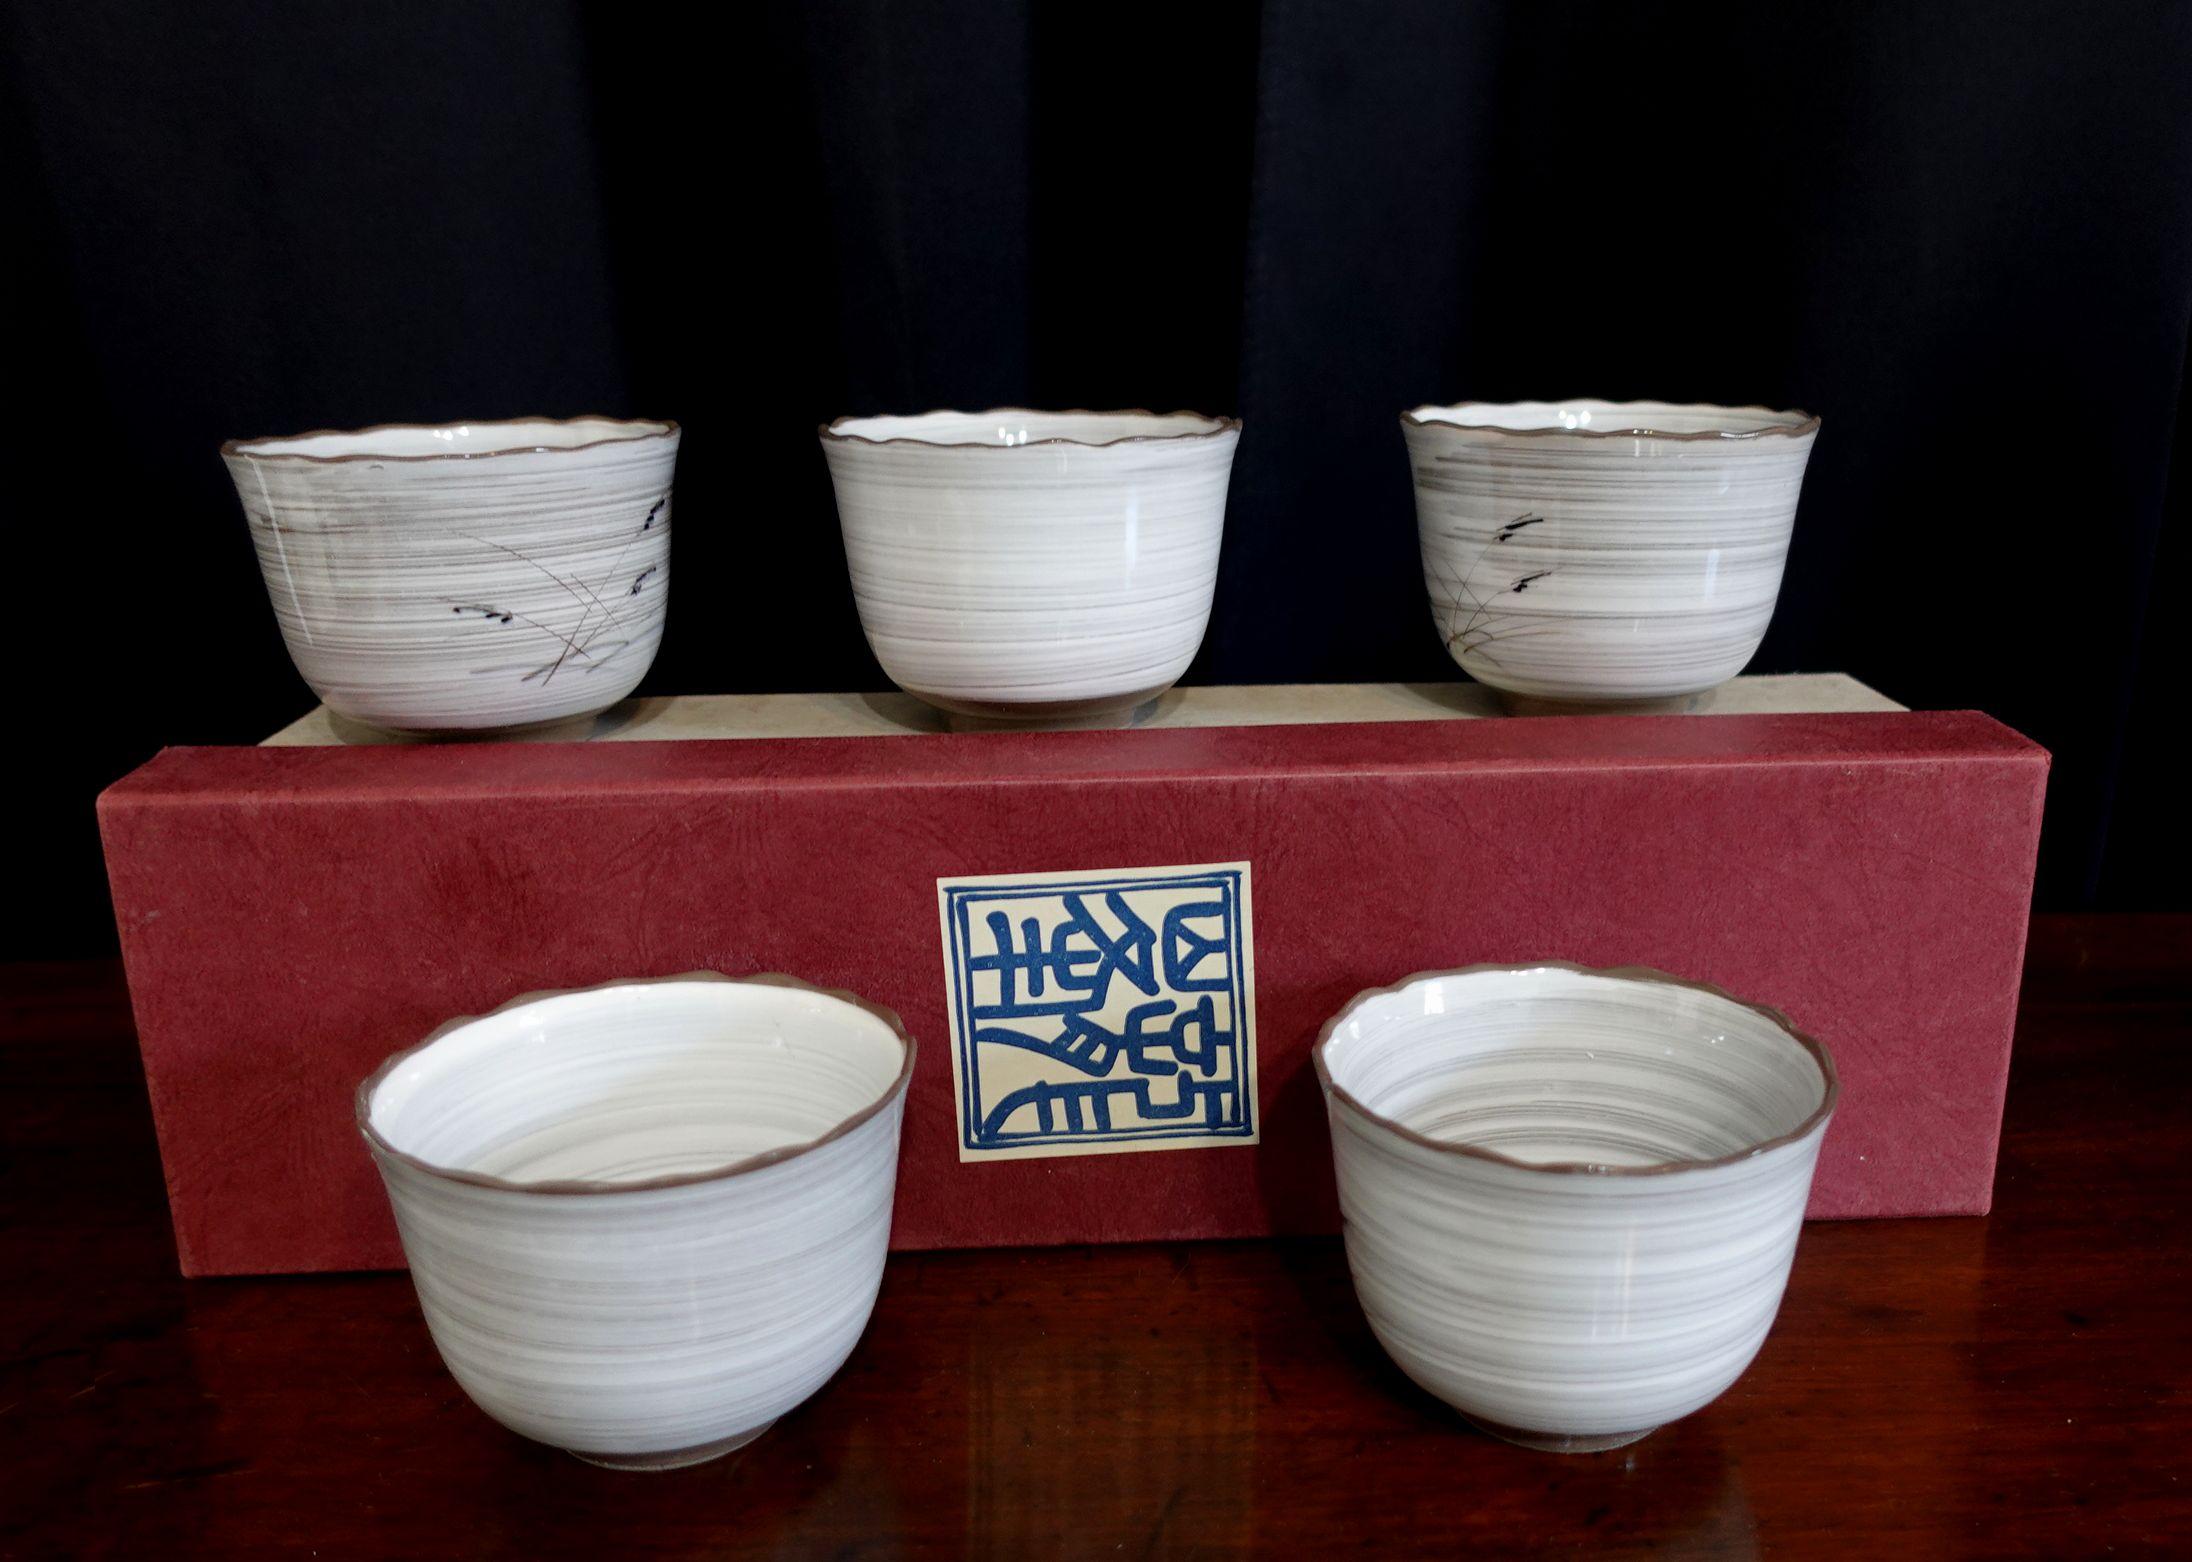 Ancien - ensemble de 5 tasses à thé japonaises avec des peintures à la main, signées au bas des tasses.
Boîte d'origine incluse

En bon état neuf d'origine et juste trouvé dans l'entrepôt, jamais utilisé auparavant.